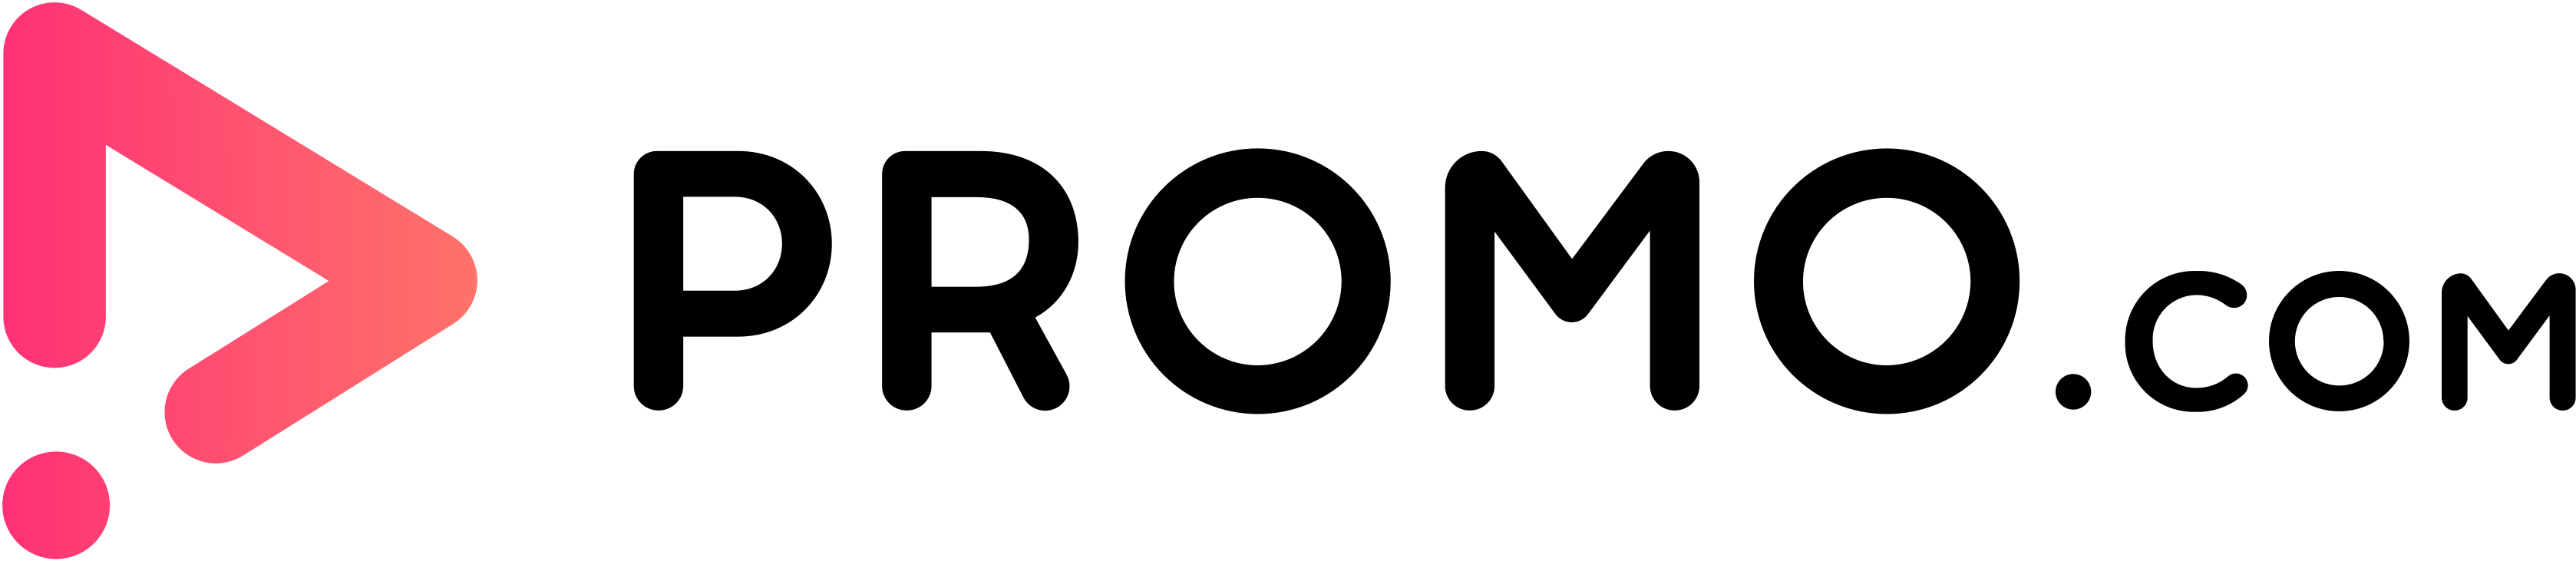 Promo.com logo